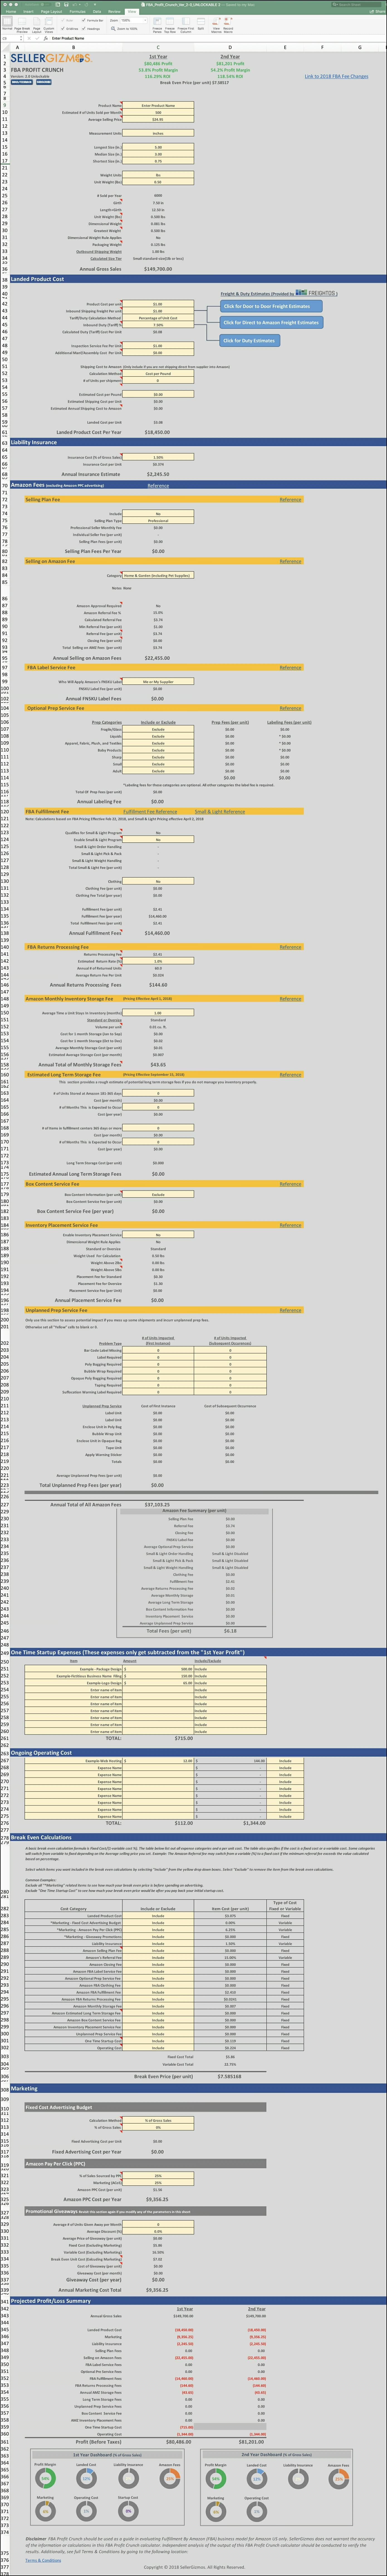 Amazon Profit Excel Spreadsheet Throughout Sellergizmos  Fba Profit Crunch Amazon Fba Excel Spreadsheet